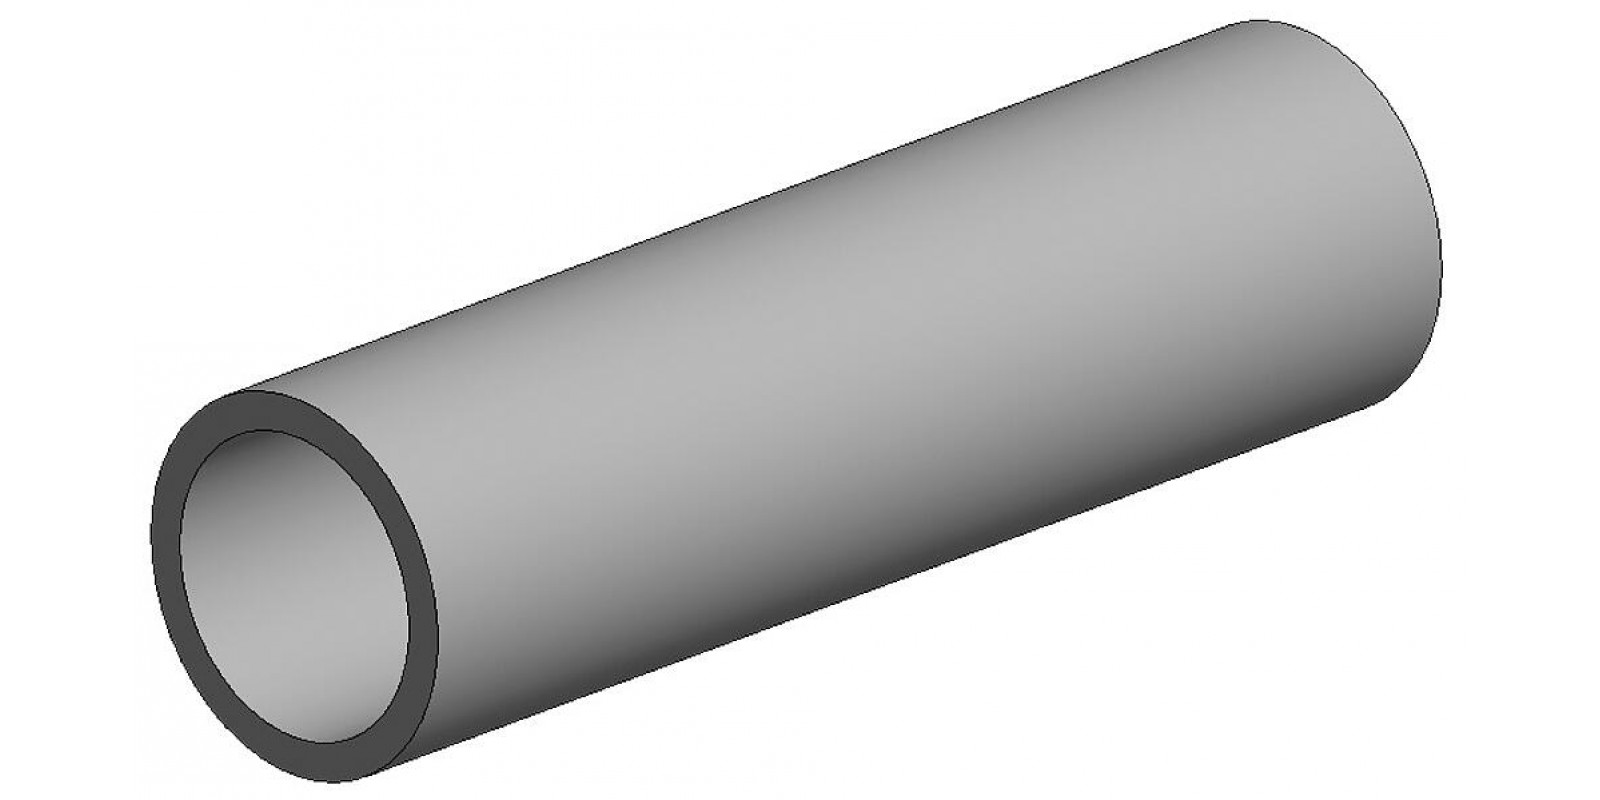 FA500227  White polystyrene round tube, diameter 5.50 mm - 7/32